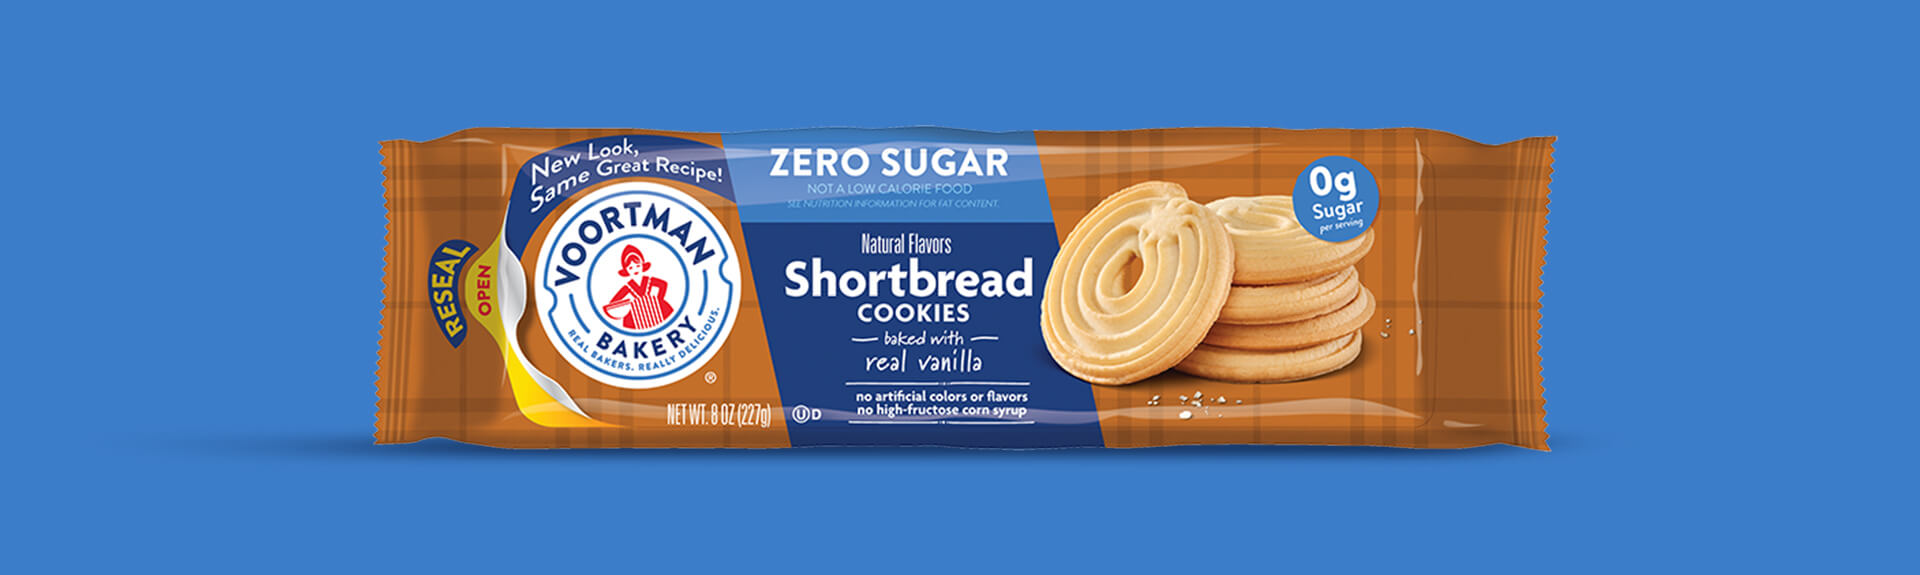 Zero Sugar Shortbread Cookies